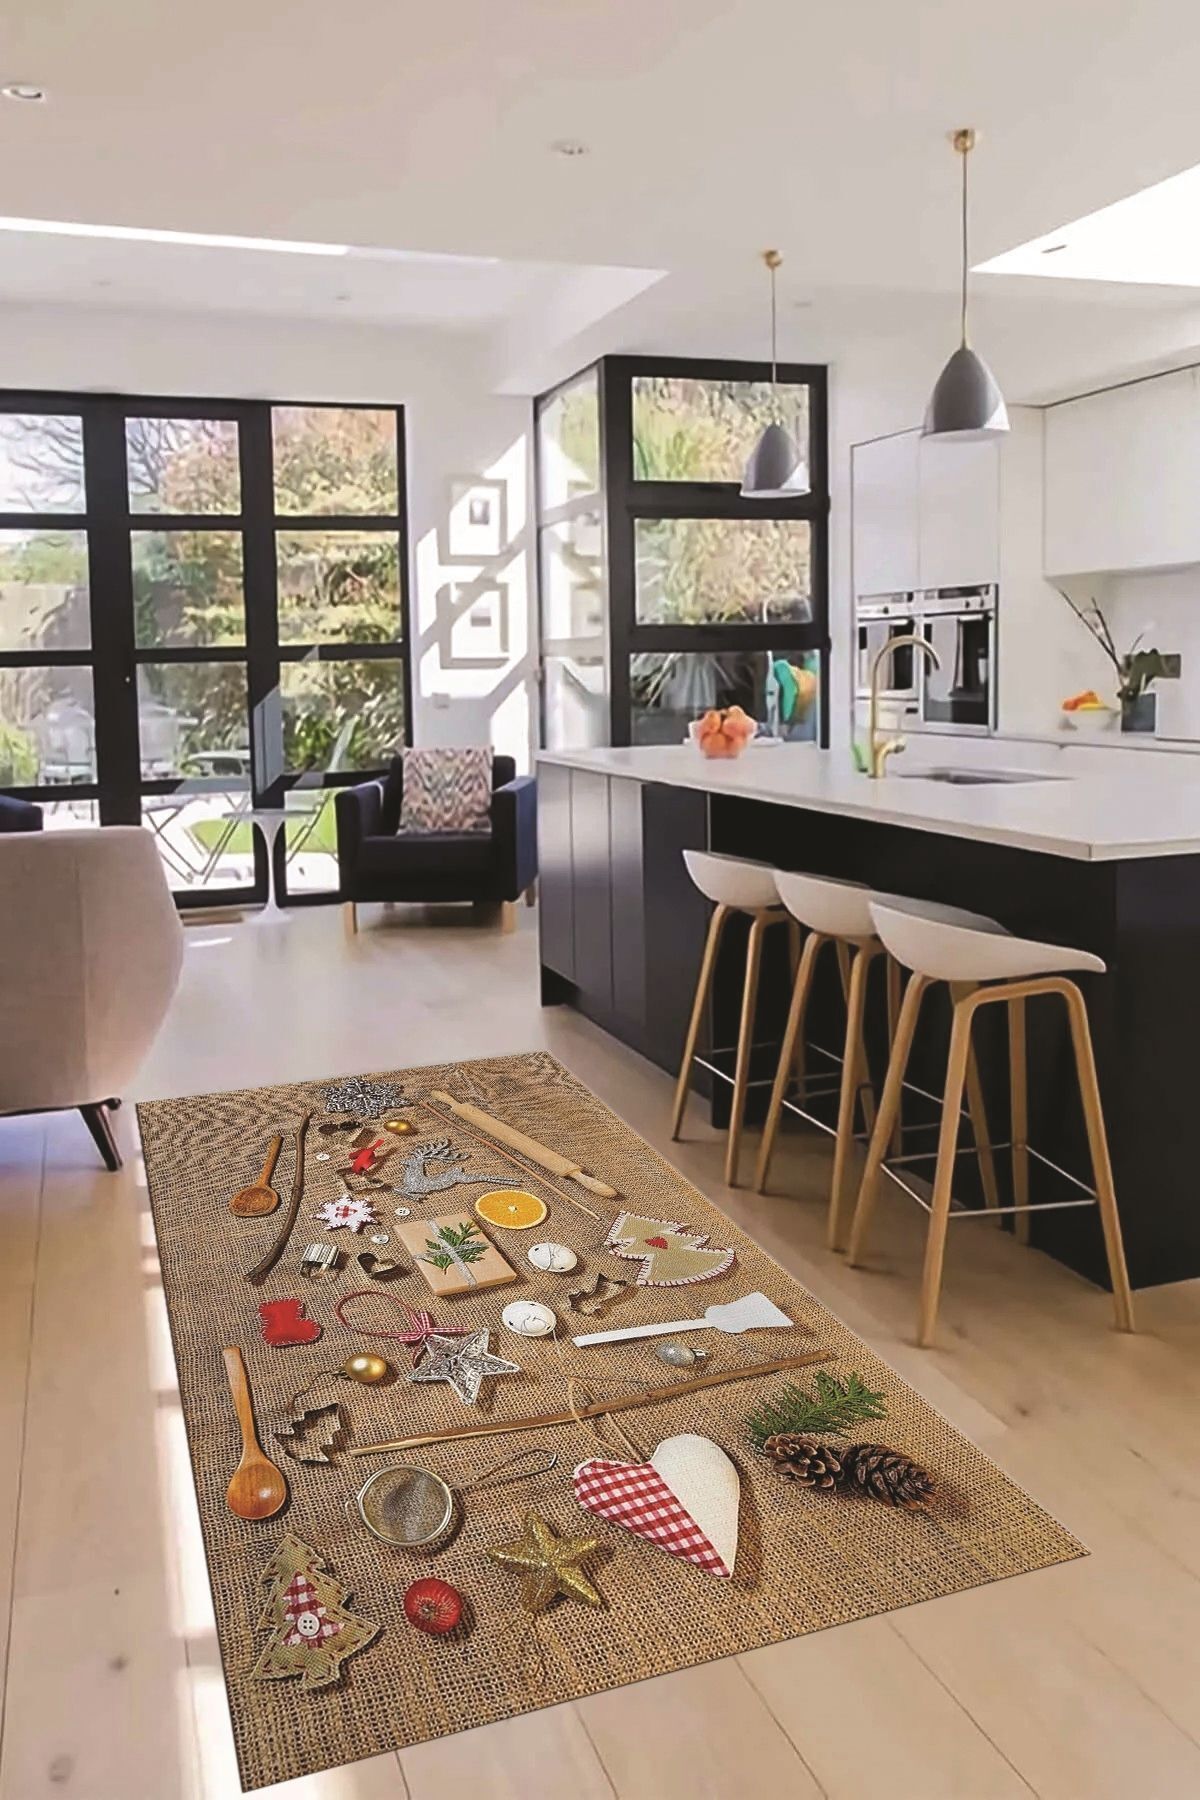 EY HOME 3D Dijital Baskılı Mutfak Eşyaları Motifli Yıkanabilir Mutfak Halısı, MUTFAK-16-RENKLİ,